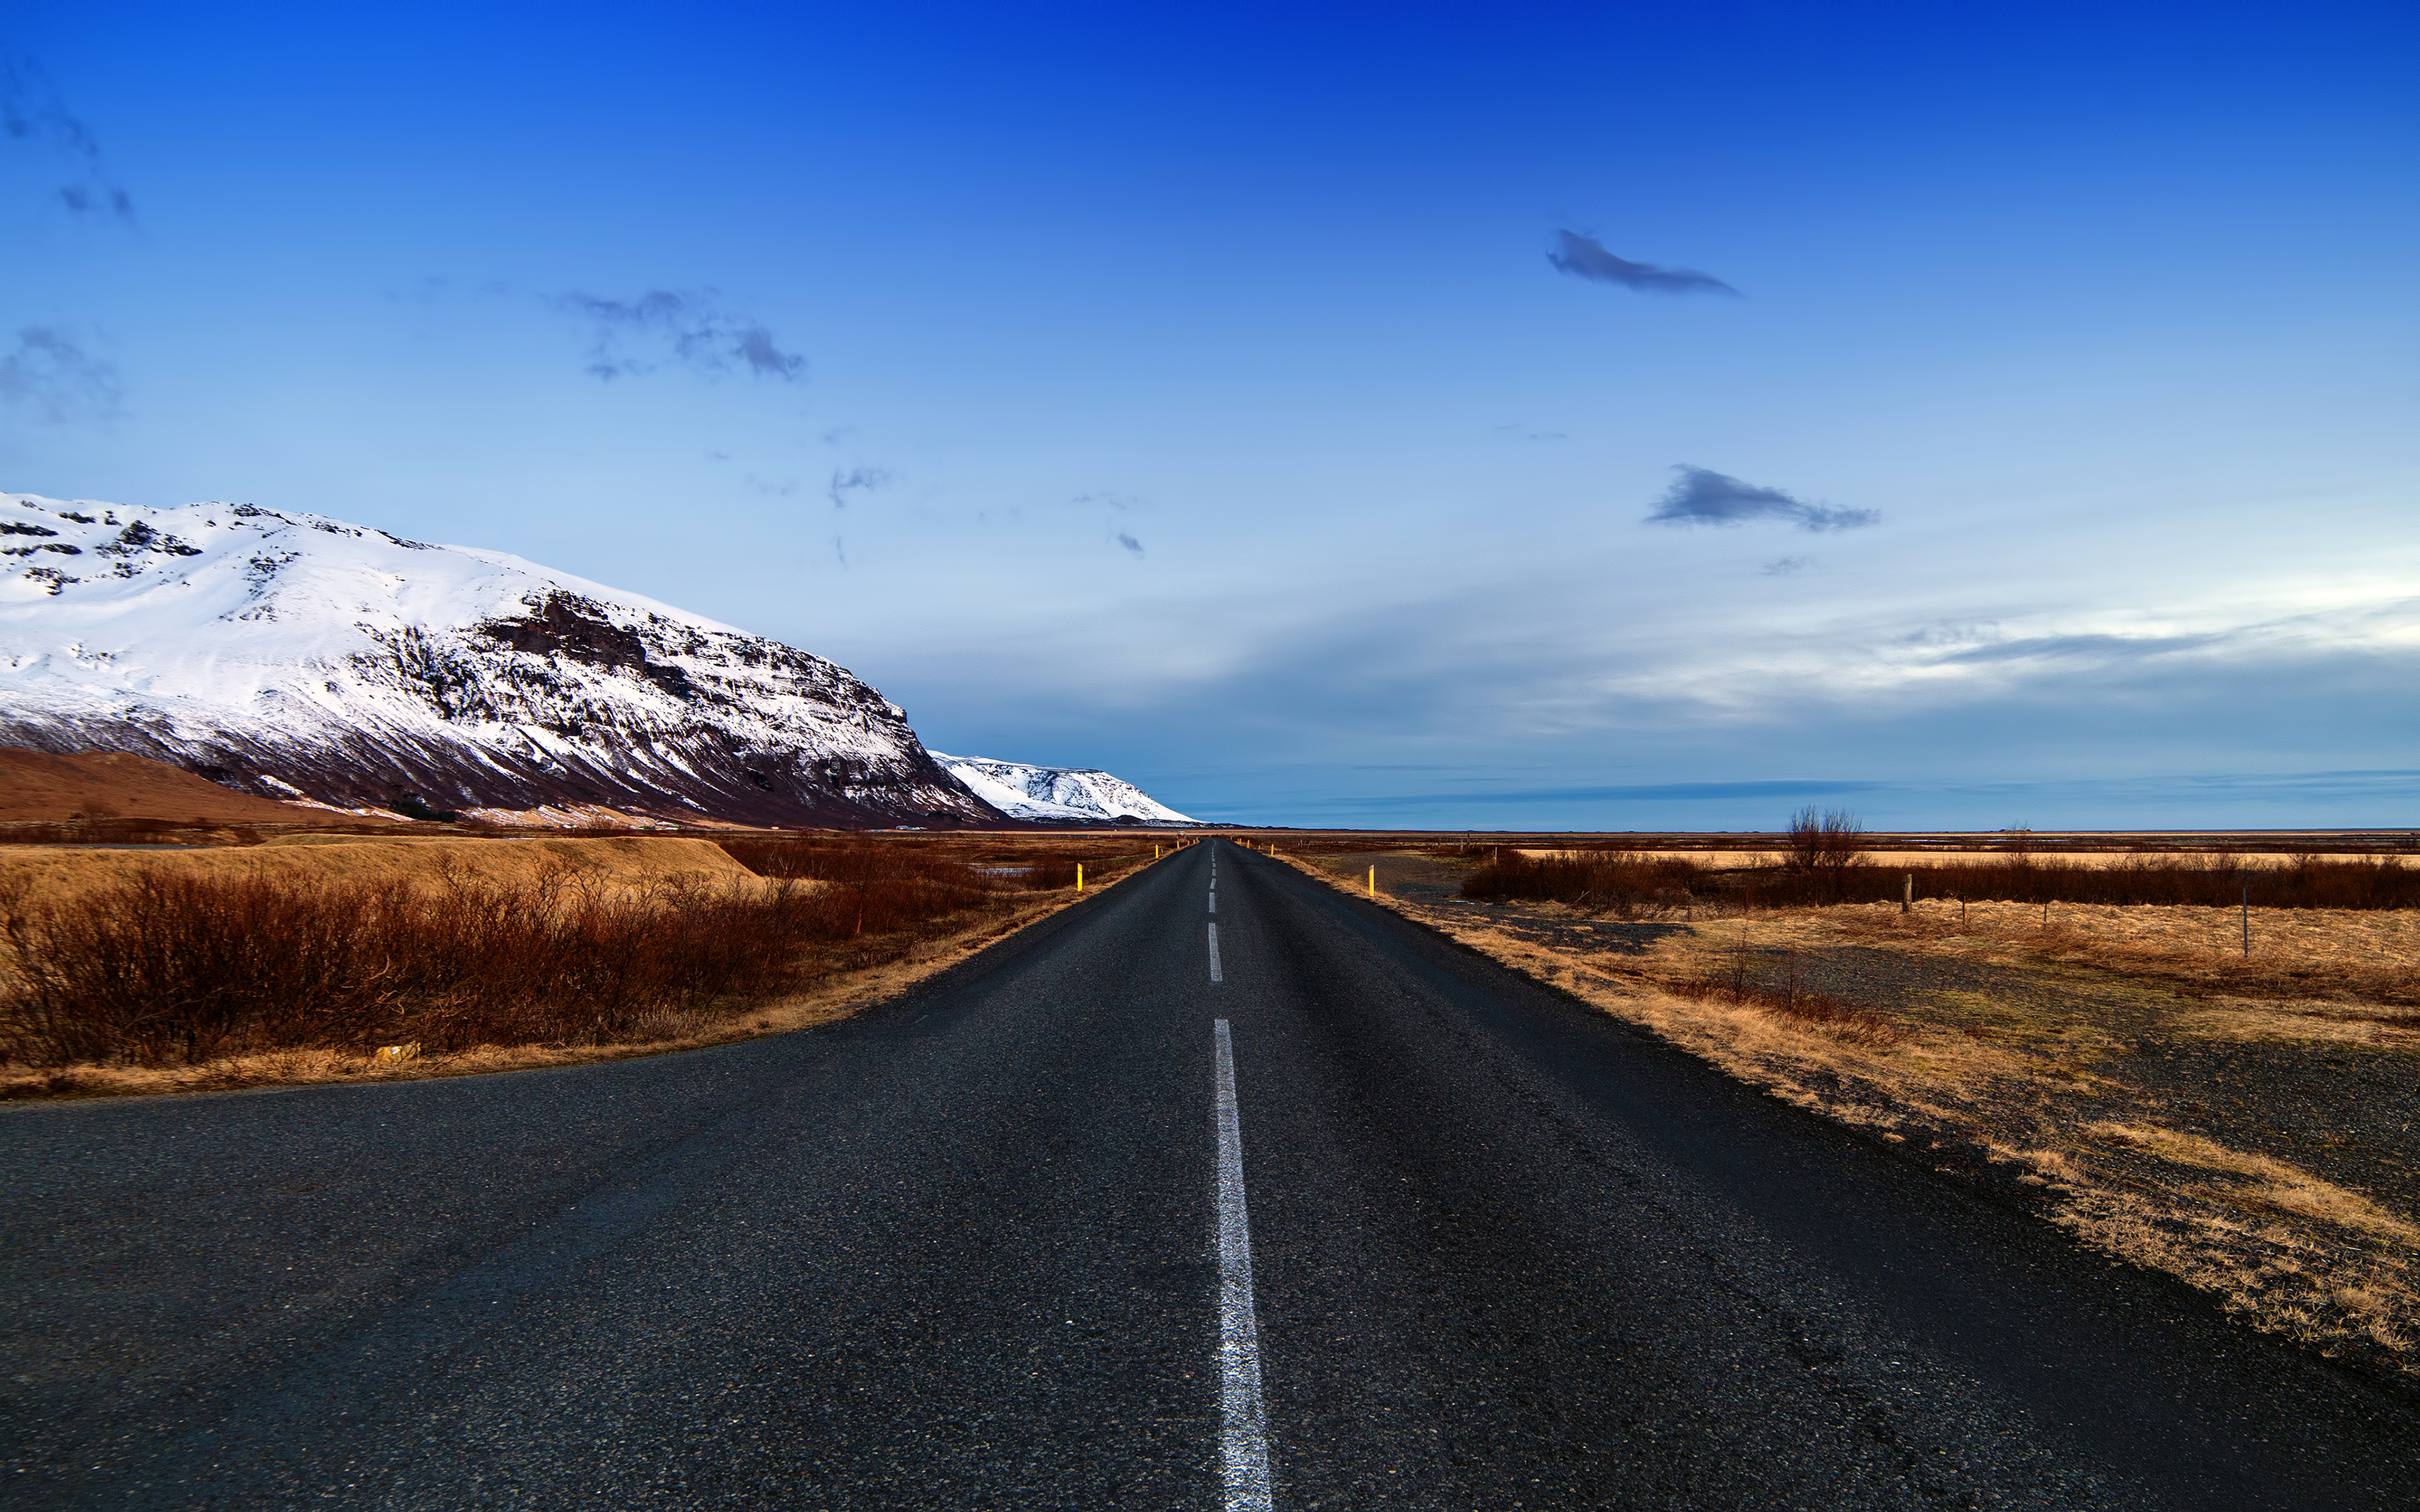 Обои дороги на столе. Дорога в гору. Пейзаж дорога. Пейзаж с дорогой. Исландия дорога.